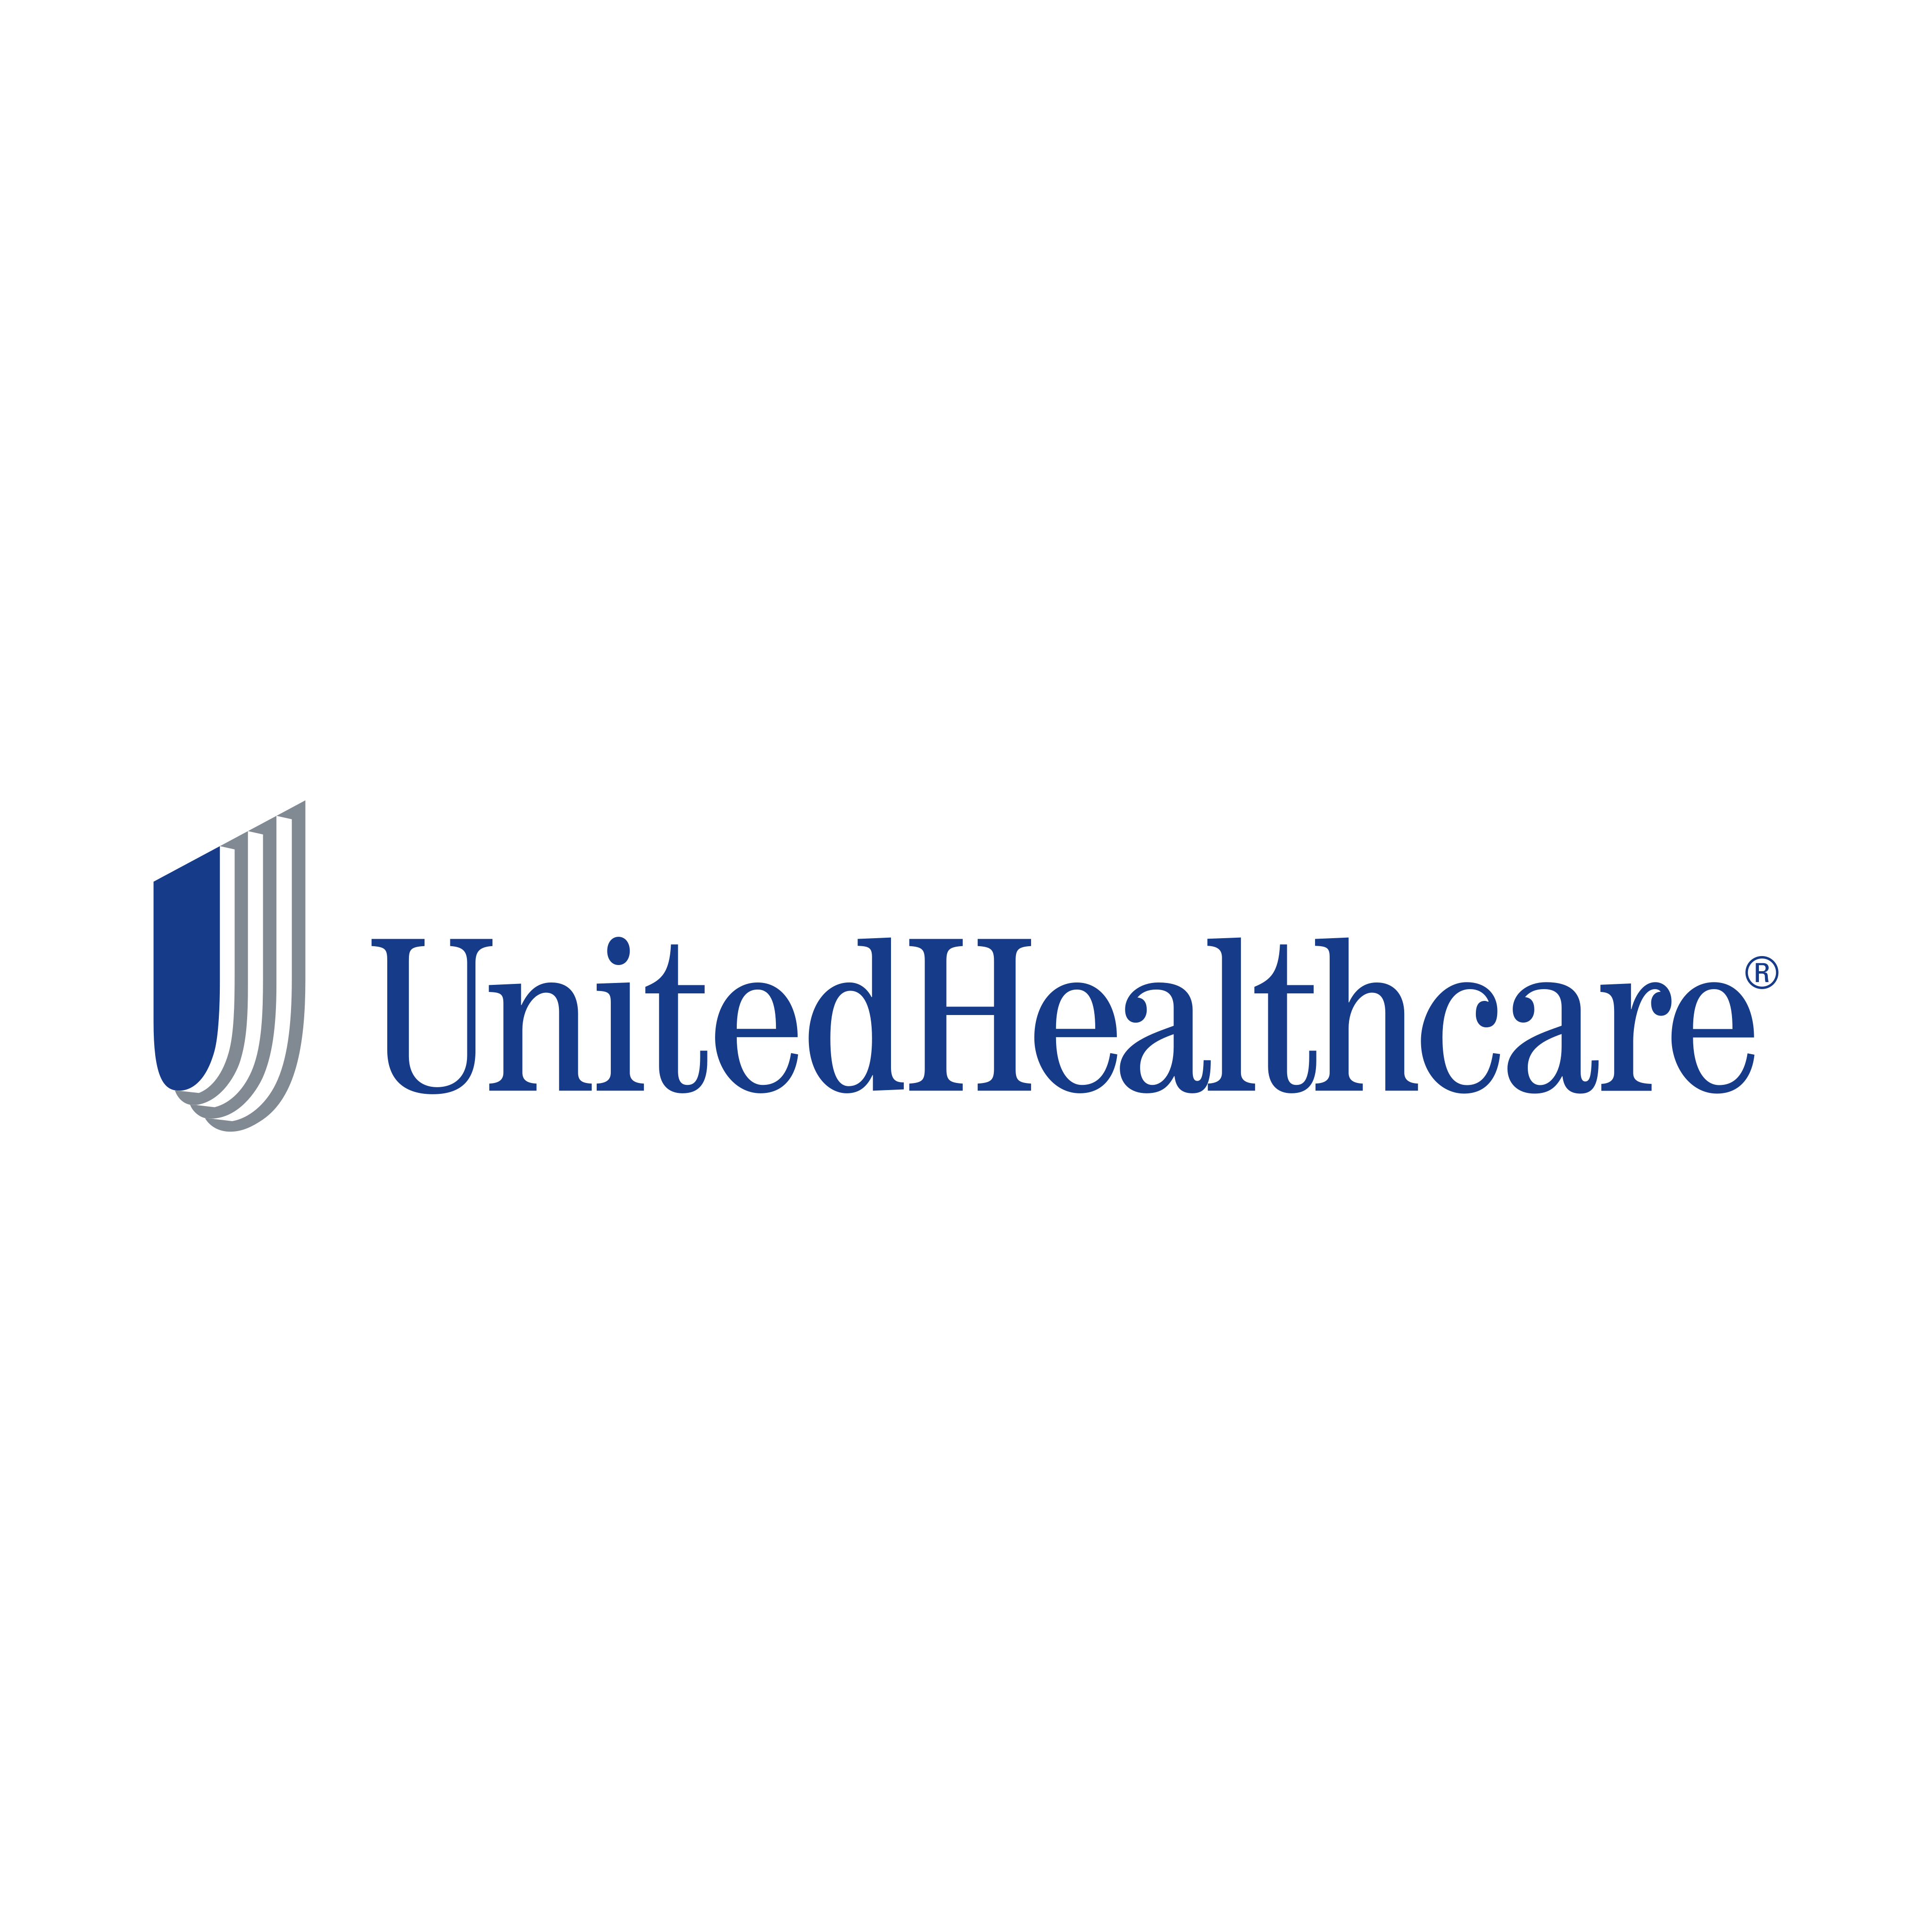 unitedhealthcare logo 0 - UnitedHealthcare Logo